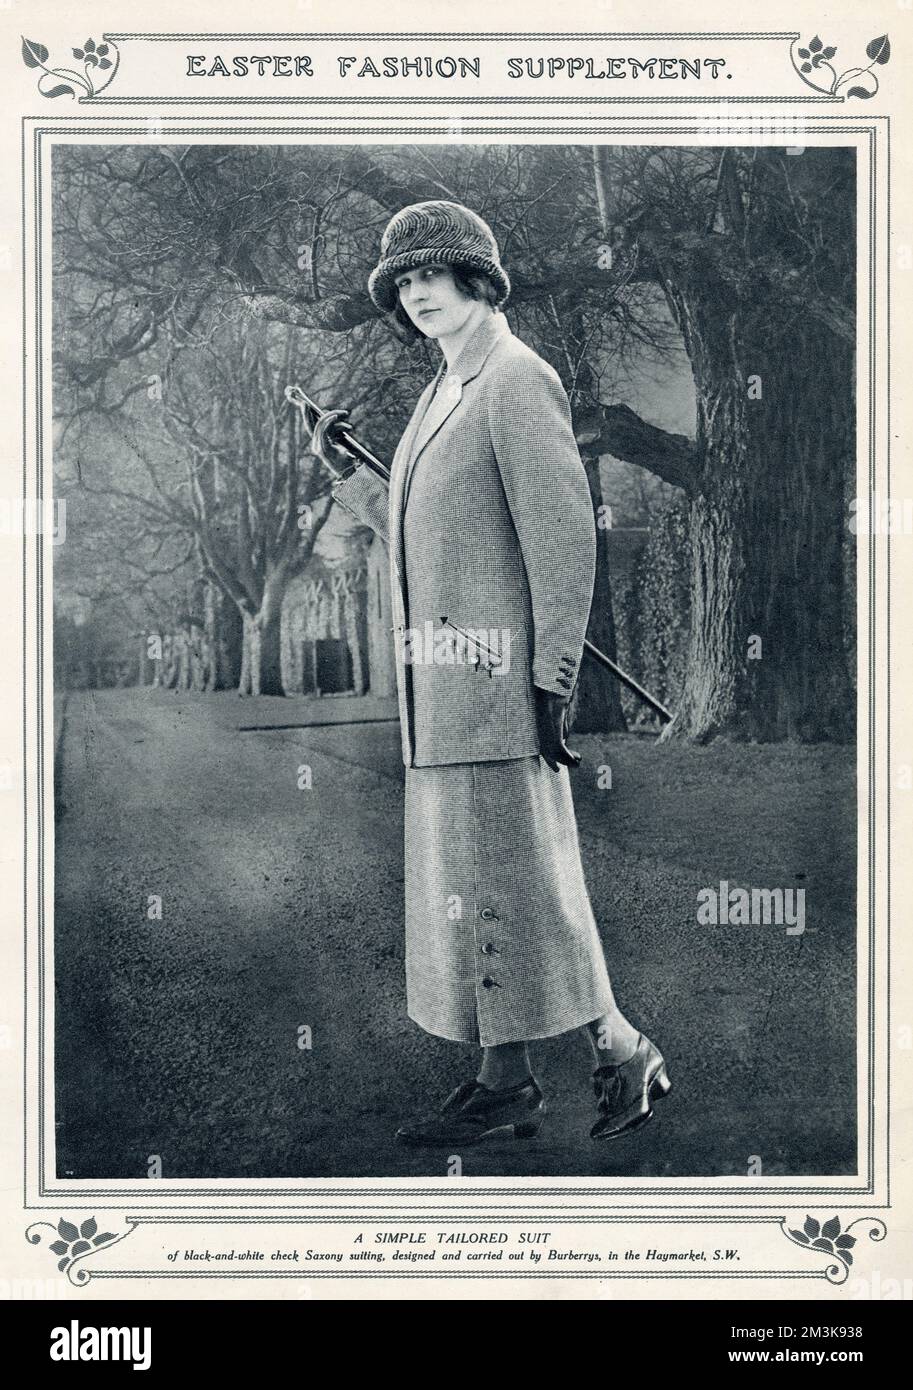 Costume simple sur mesure en noir et blanc à carreaux Saxe suitting, conçu et réalisé par Burberrys à Haymarket. Date: 1924 Banque D'Images